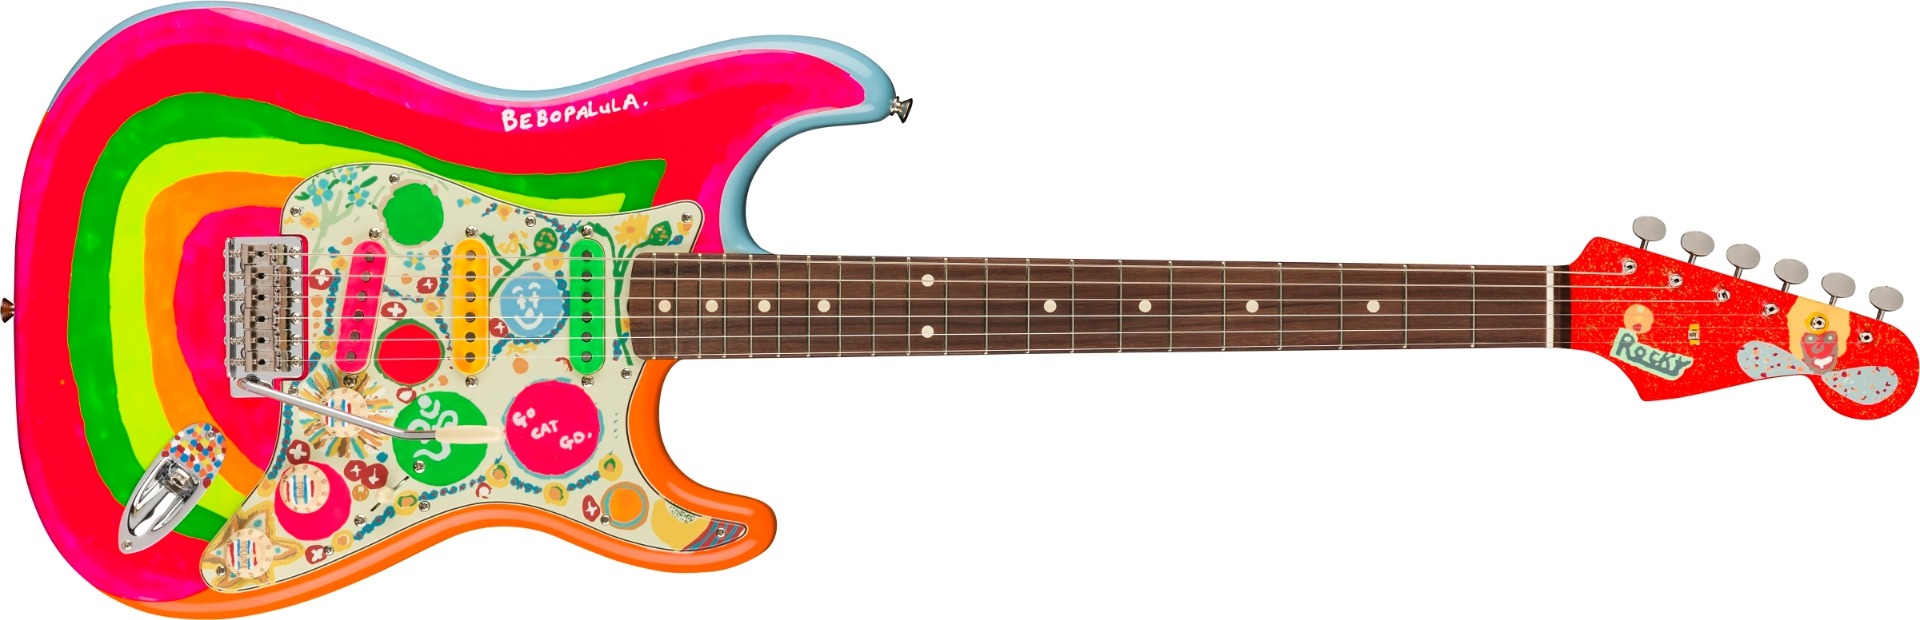 Fender George Harrison Rocky gitaar